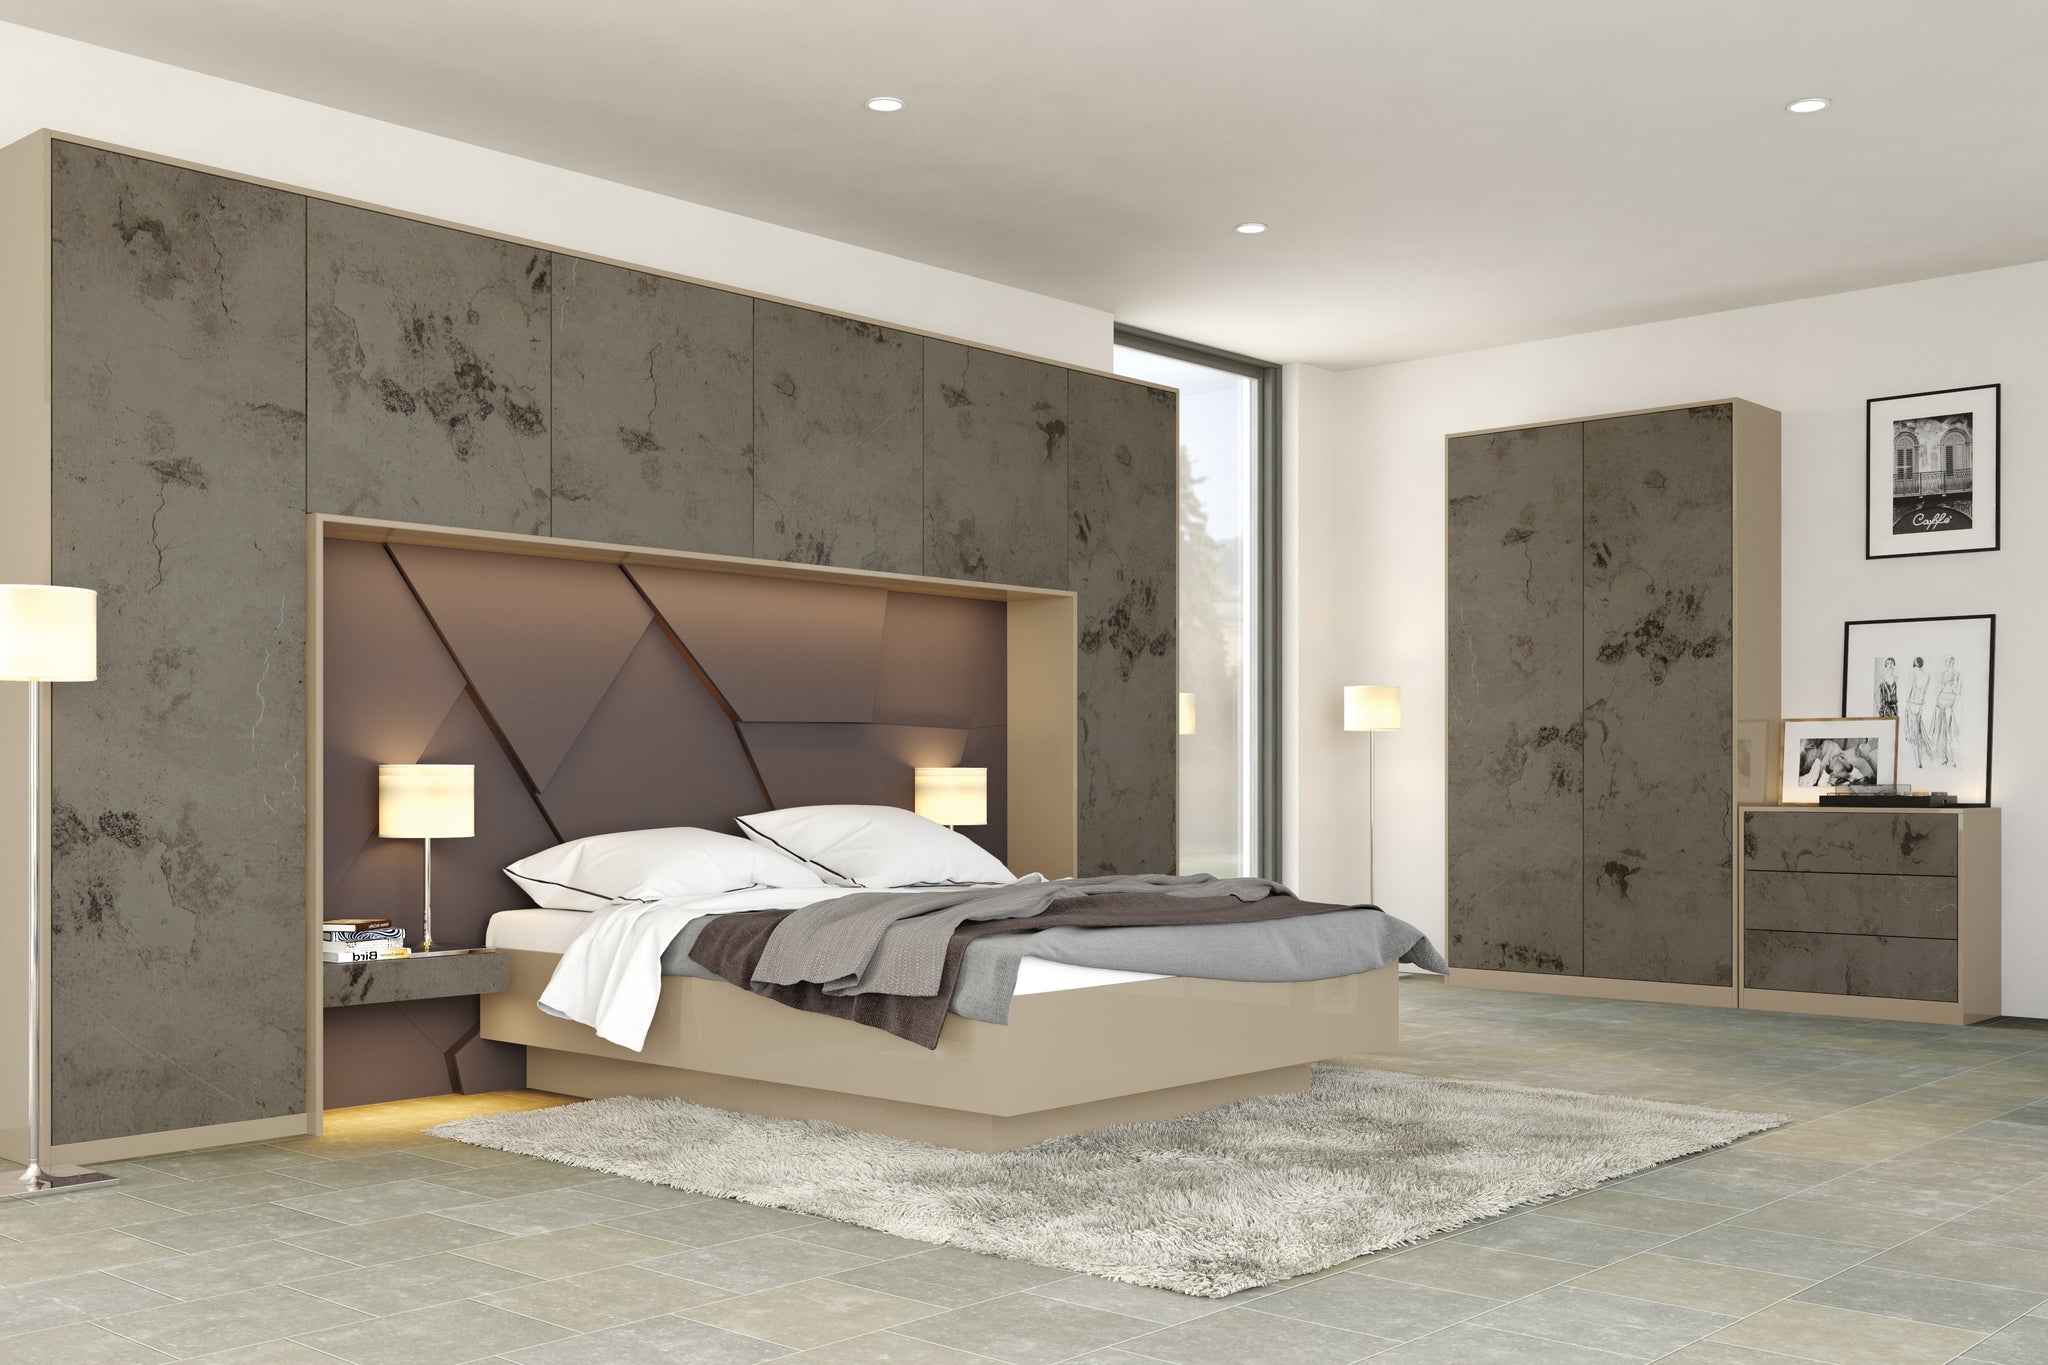 Zurfis Magma Titanium bedroom furniture